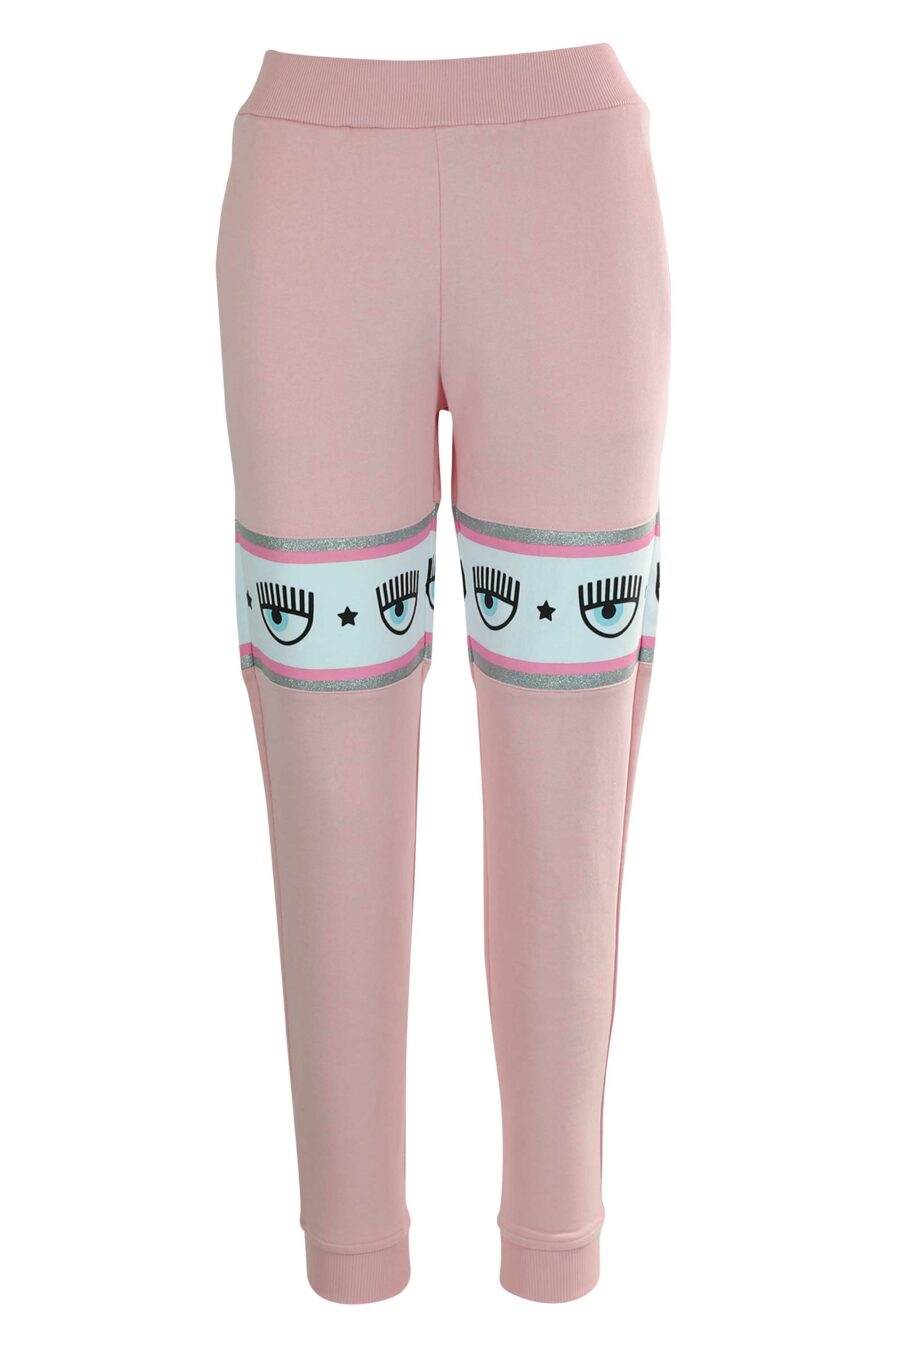 Pantalón de chándal rosa con capucha y logo en cinta blanco y plateado” - 8052672419163